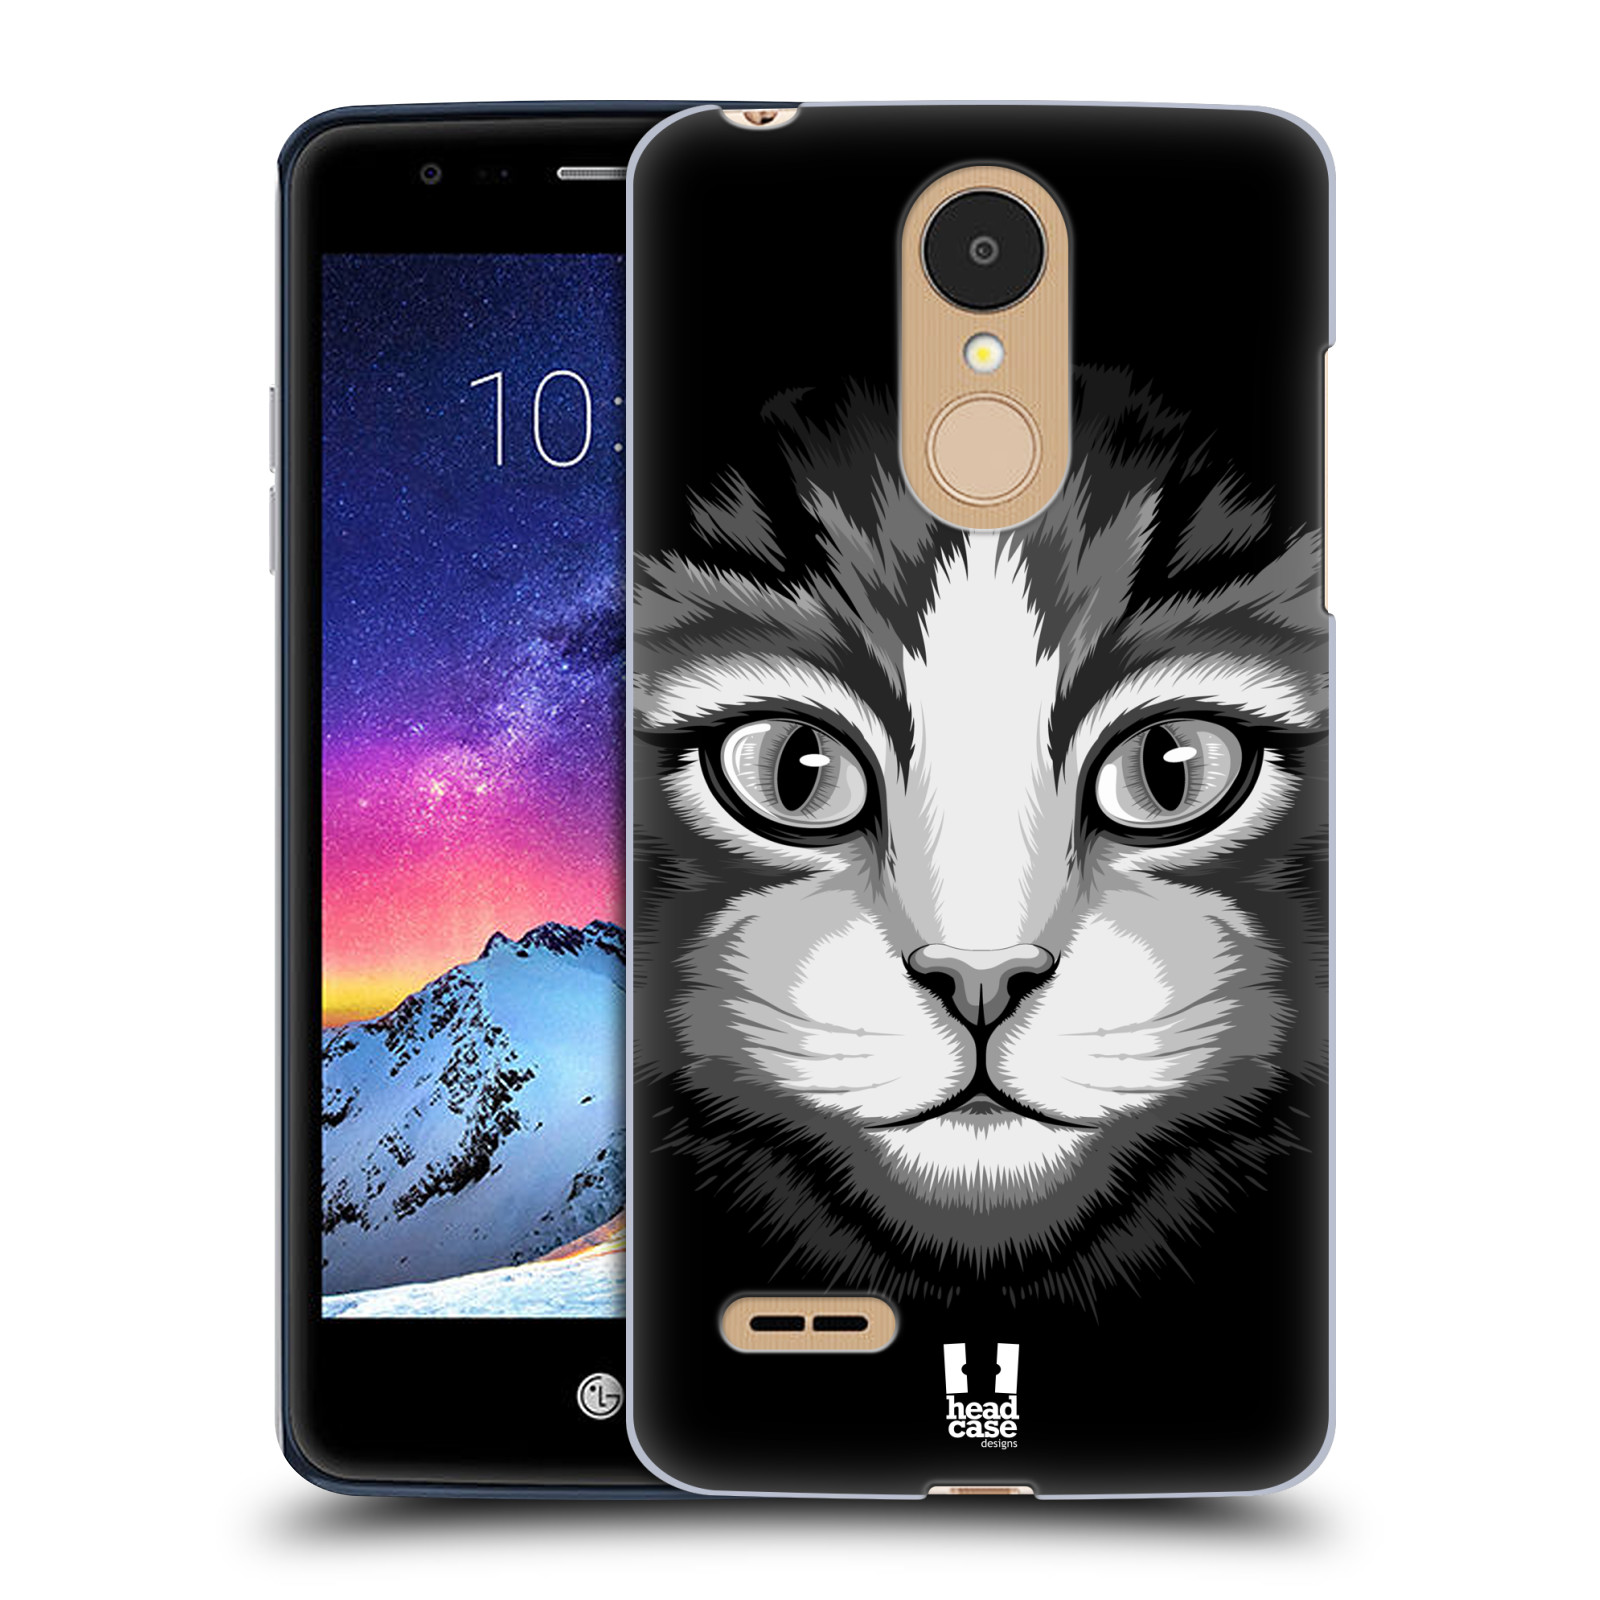 HEAD CASE plastový obal na mobil LG K9 / K8 2018 vzor Zvíře kreslená tvář 2 kočička